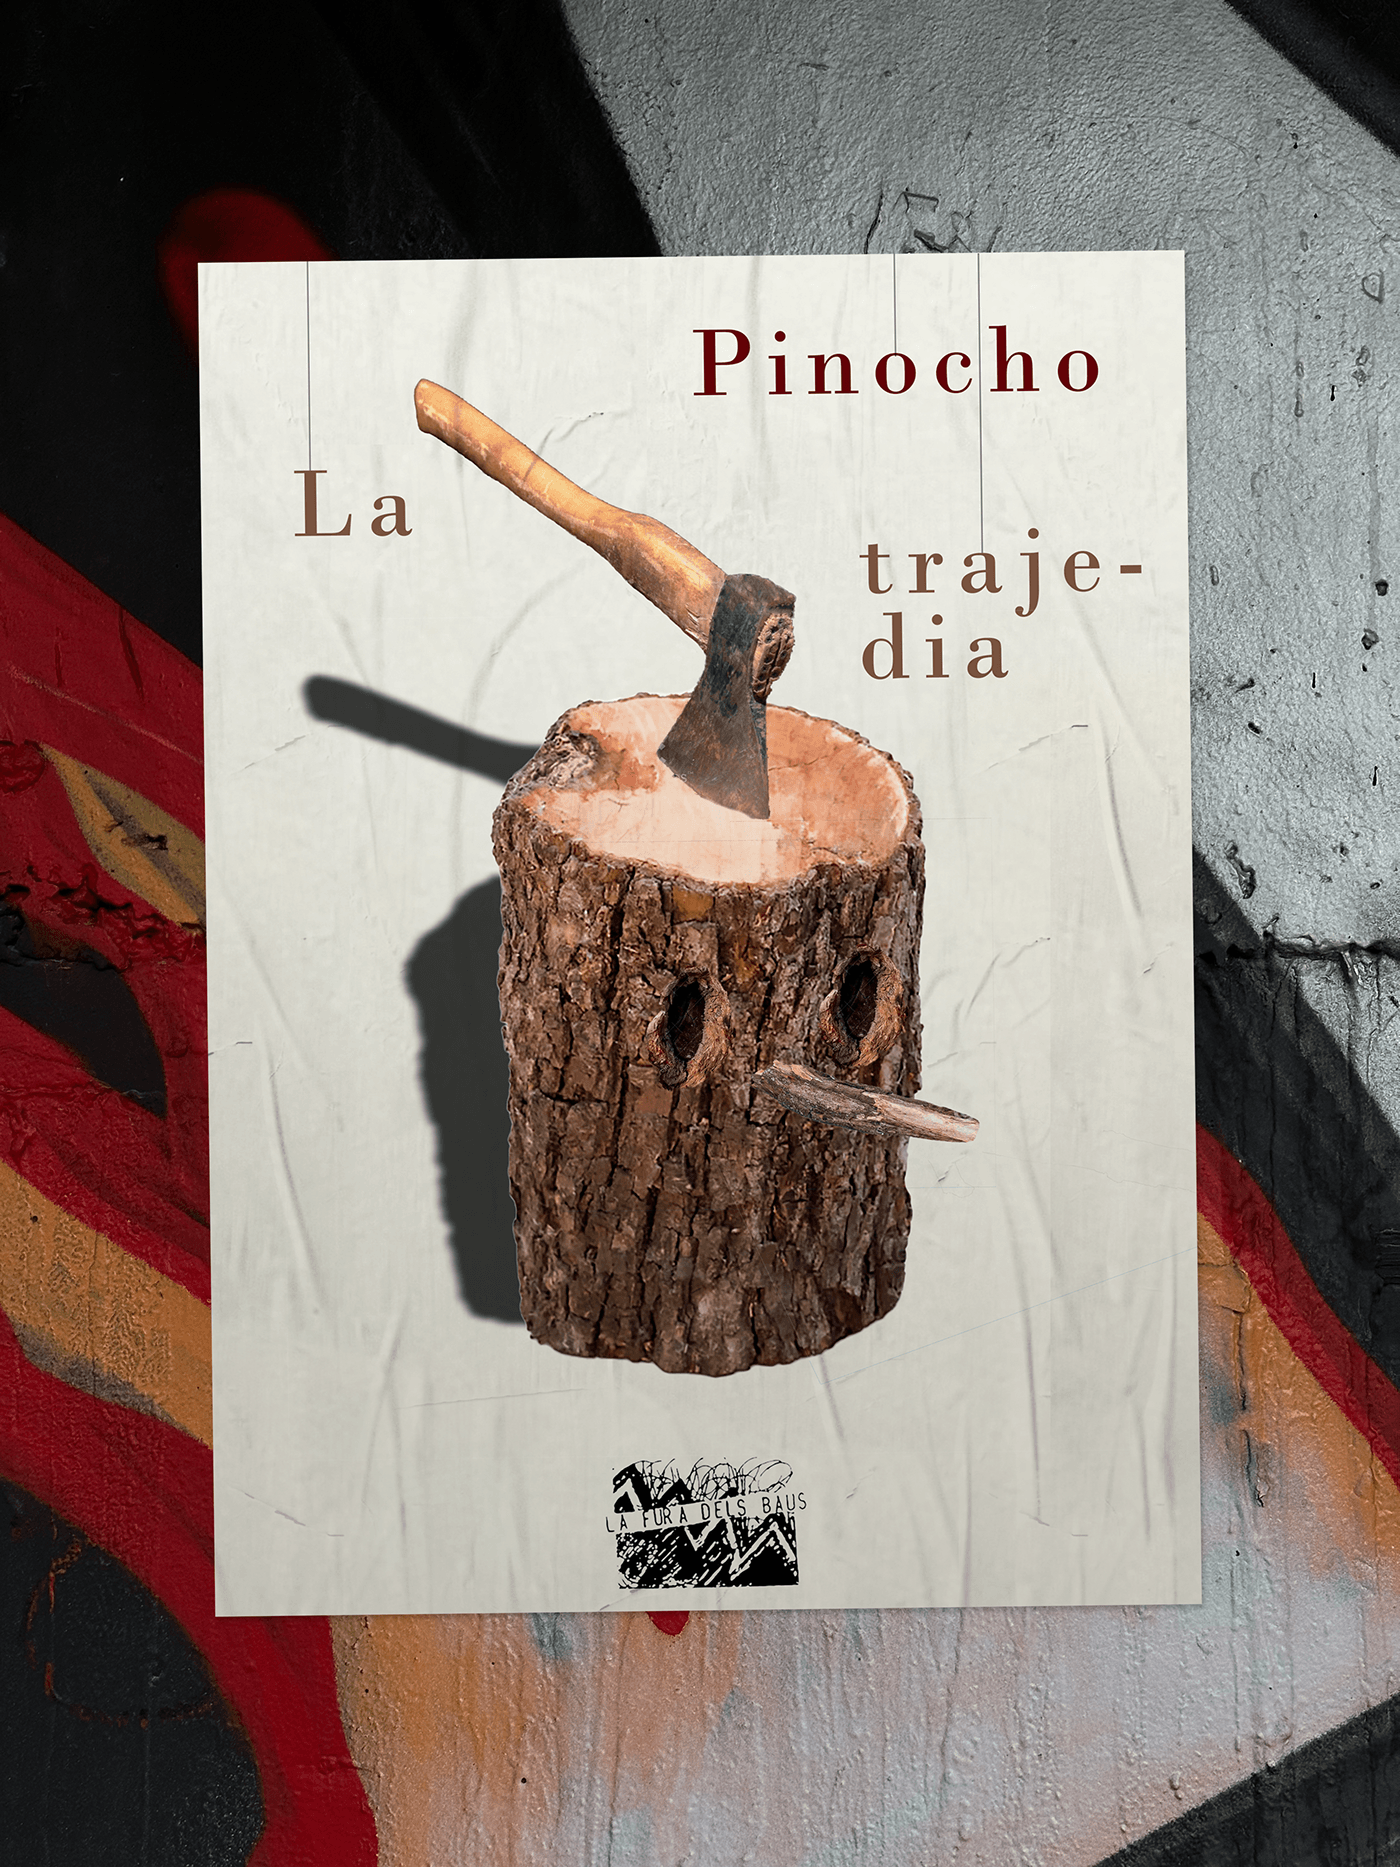 teatro diseño publicidad pinocchio disney barcelona